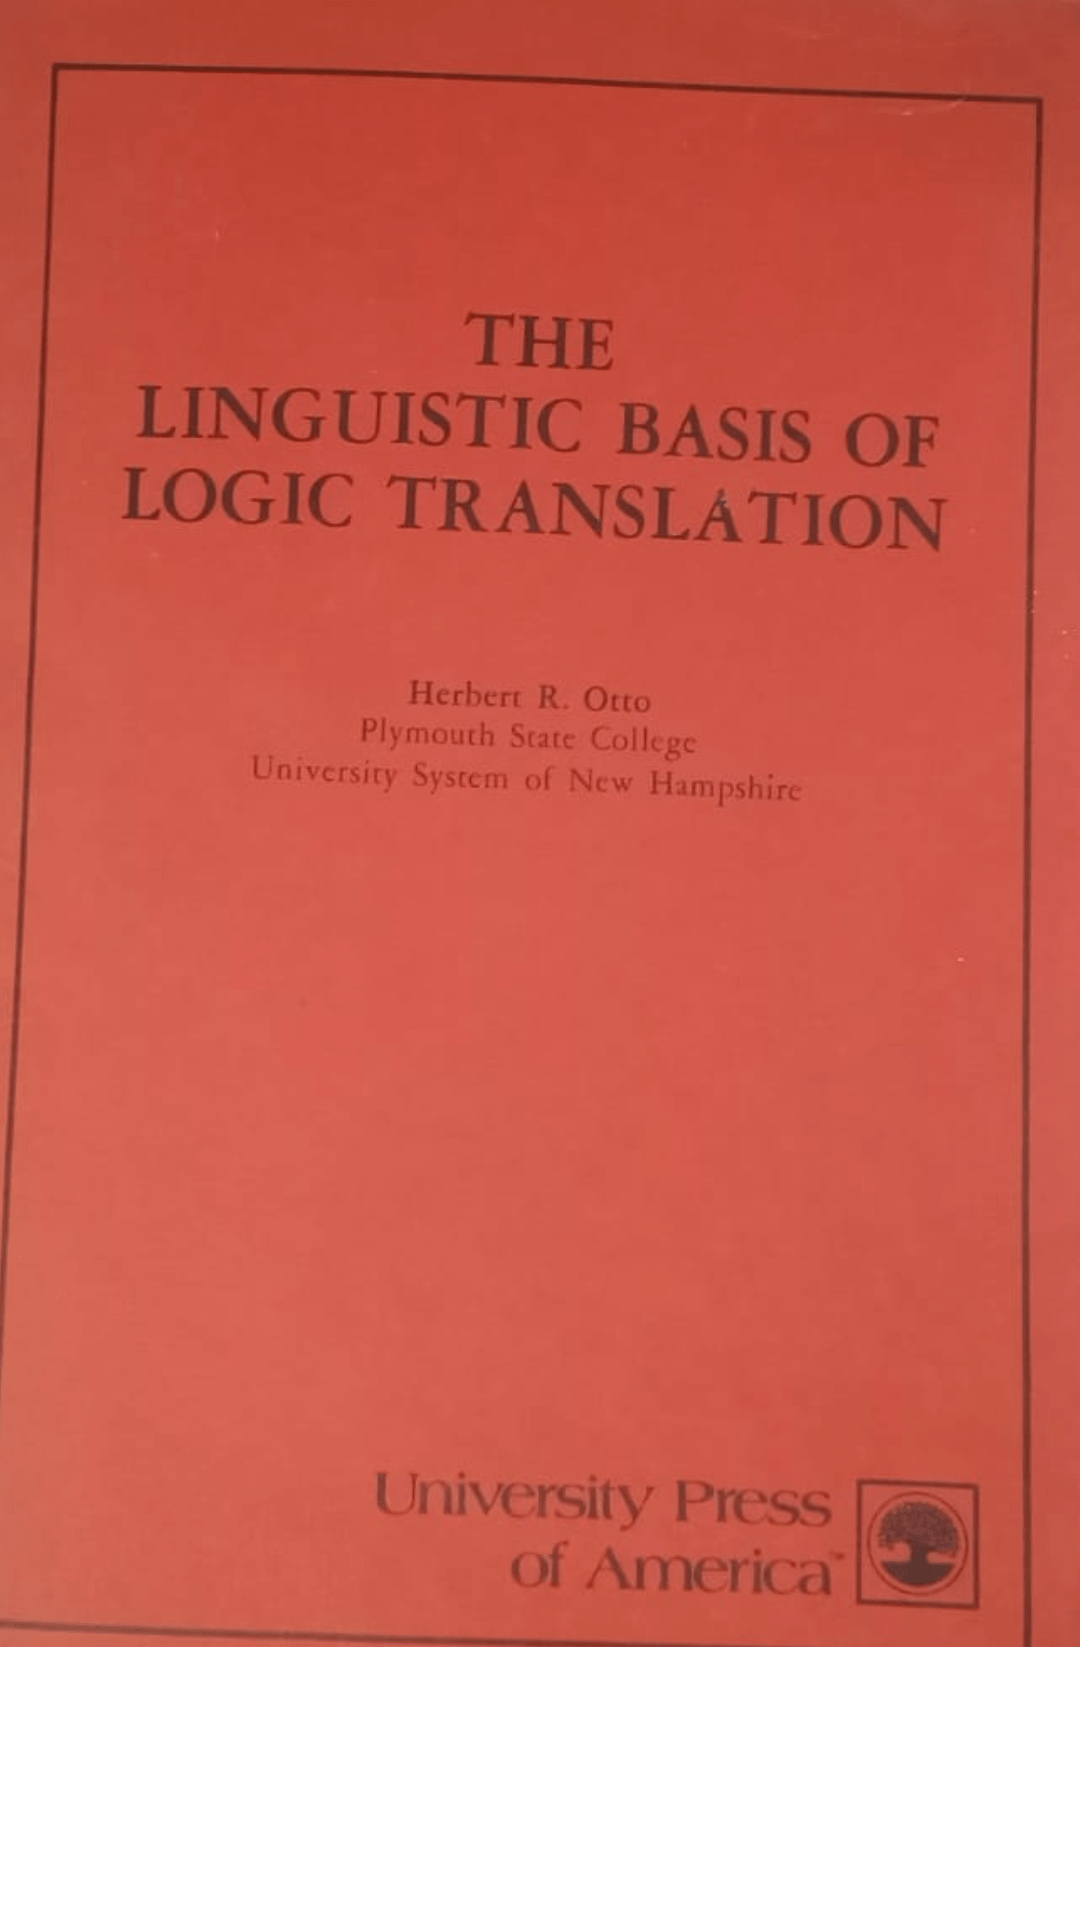 The Linguistic Basis of Logic Translation